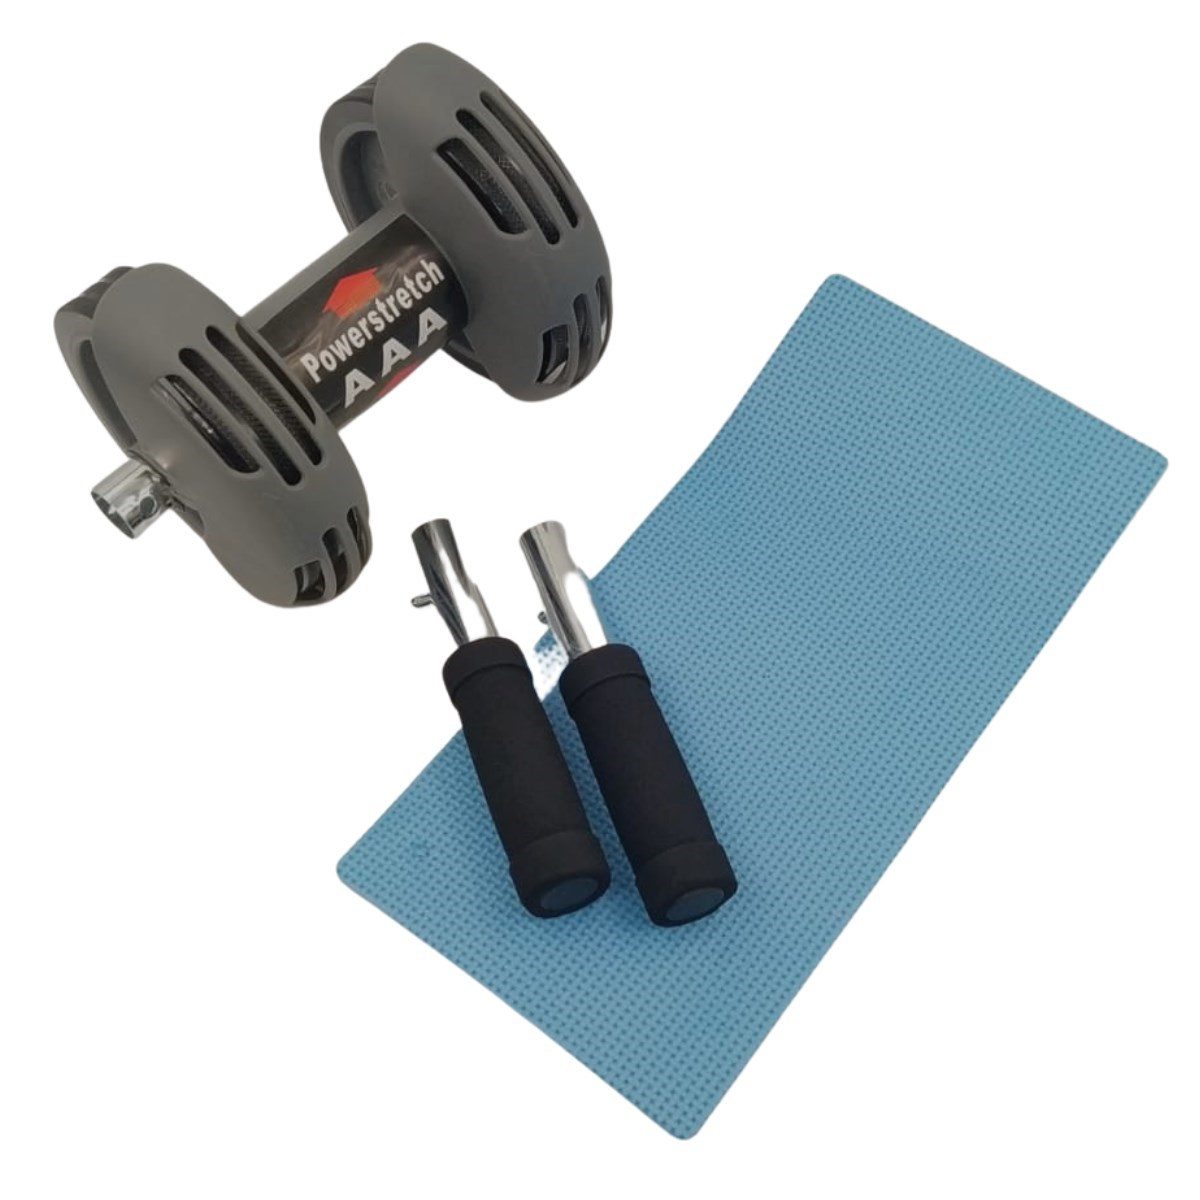 Karın Kası Çalıştırıcı Fitness Egzersiz Spor Aleti Power Stretch Roller (4172)